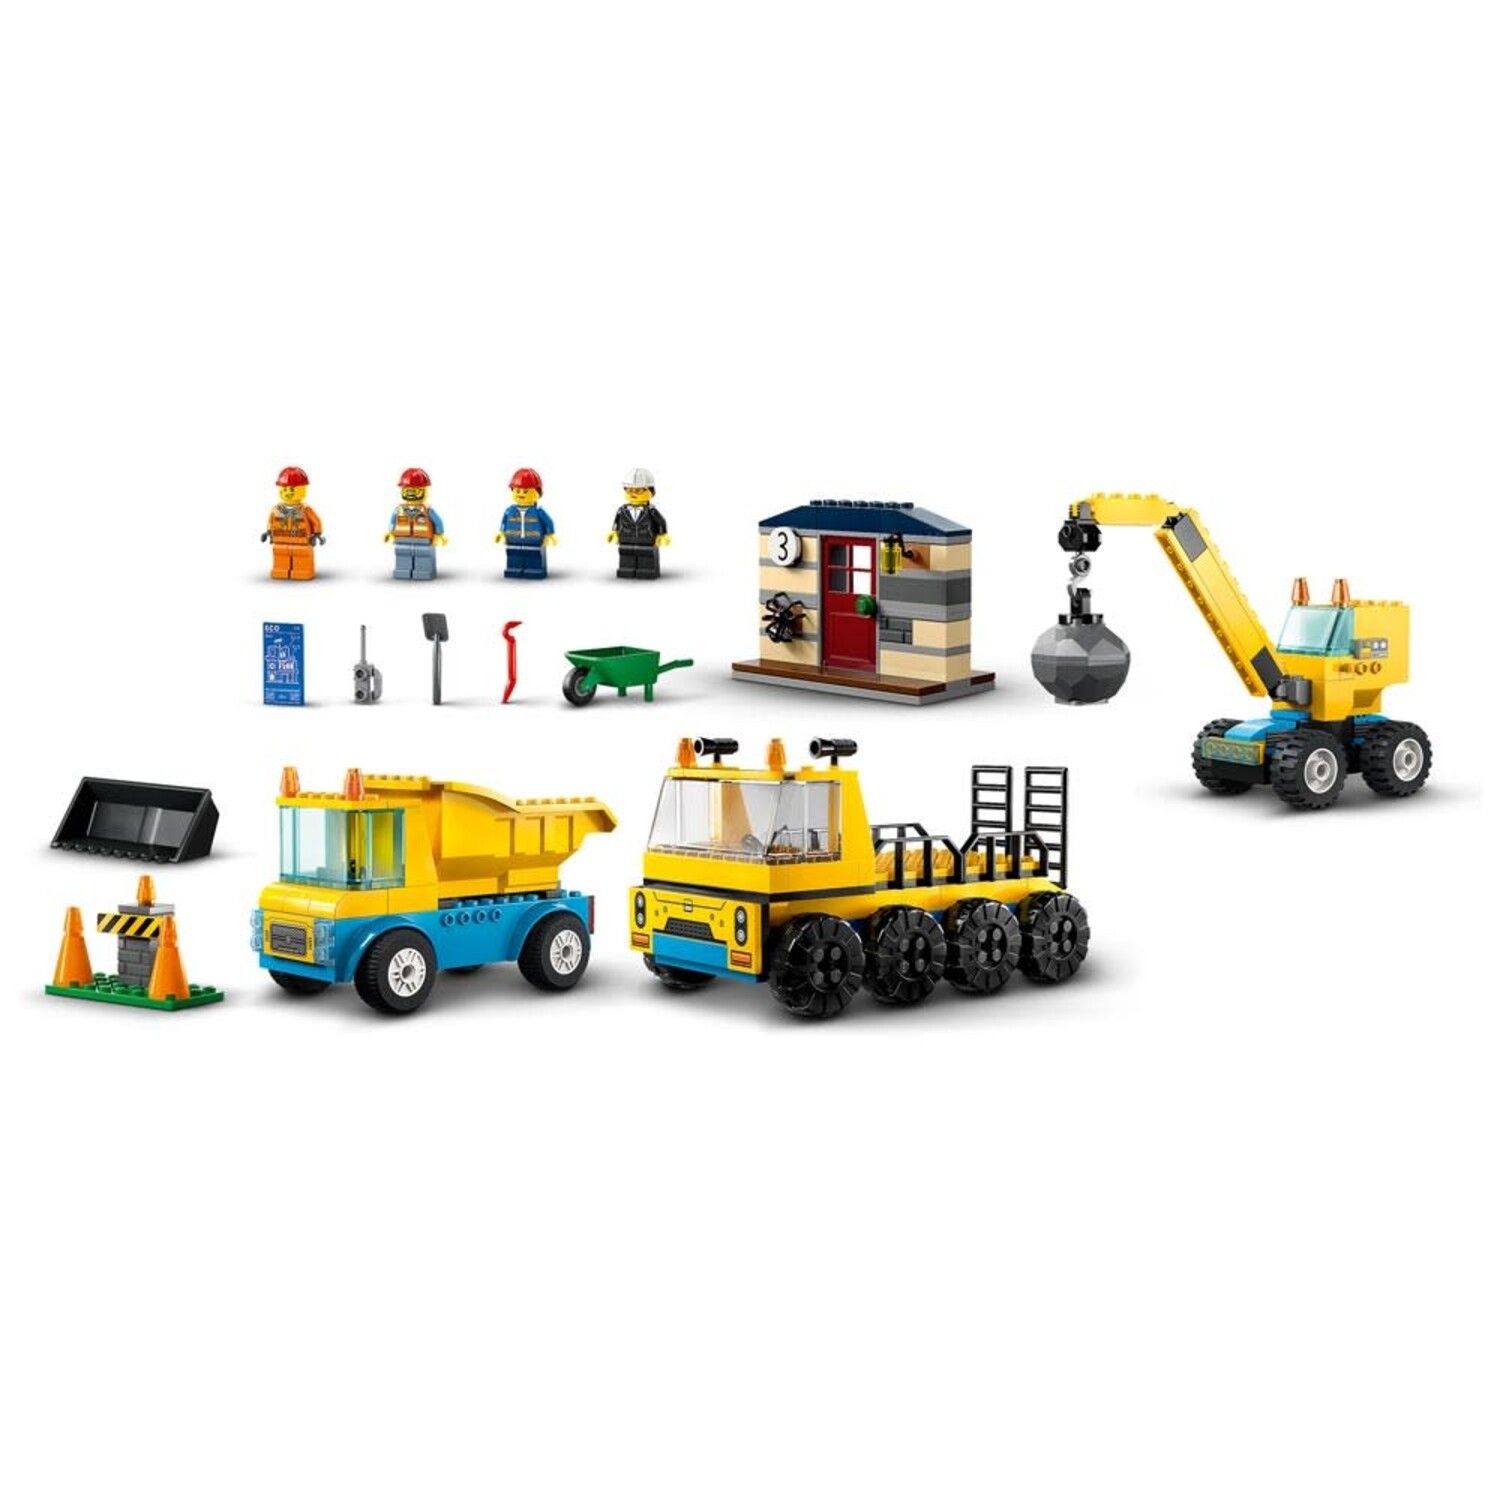 https://cdn.shoplightspeed.com/shops/653480/files/58438678/1500x4000x3/lego-construction-trucks-and-wrecking-ball-crane-l.jpg